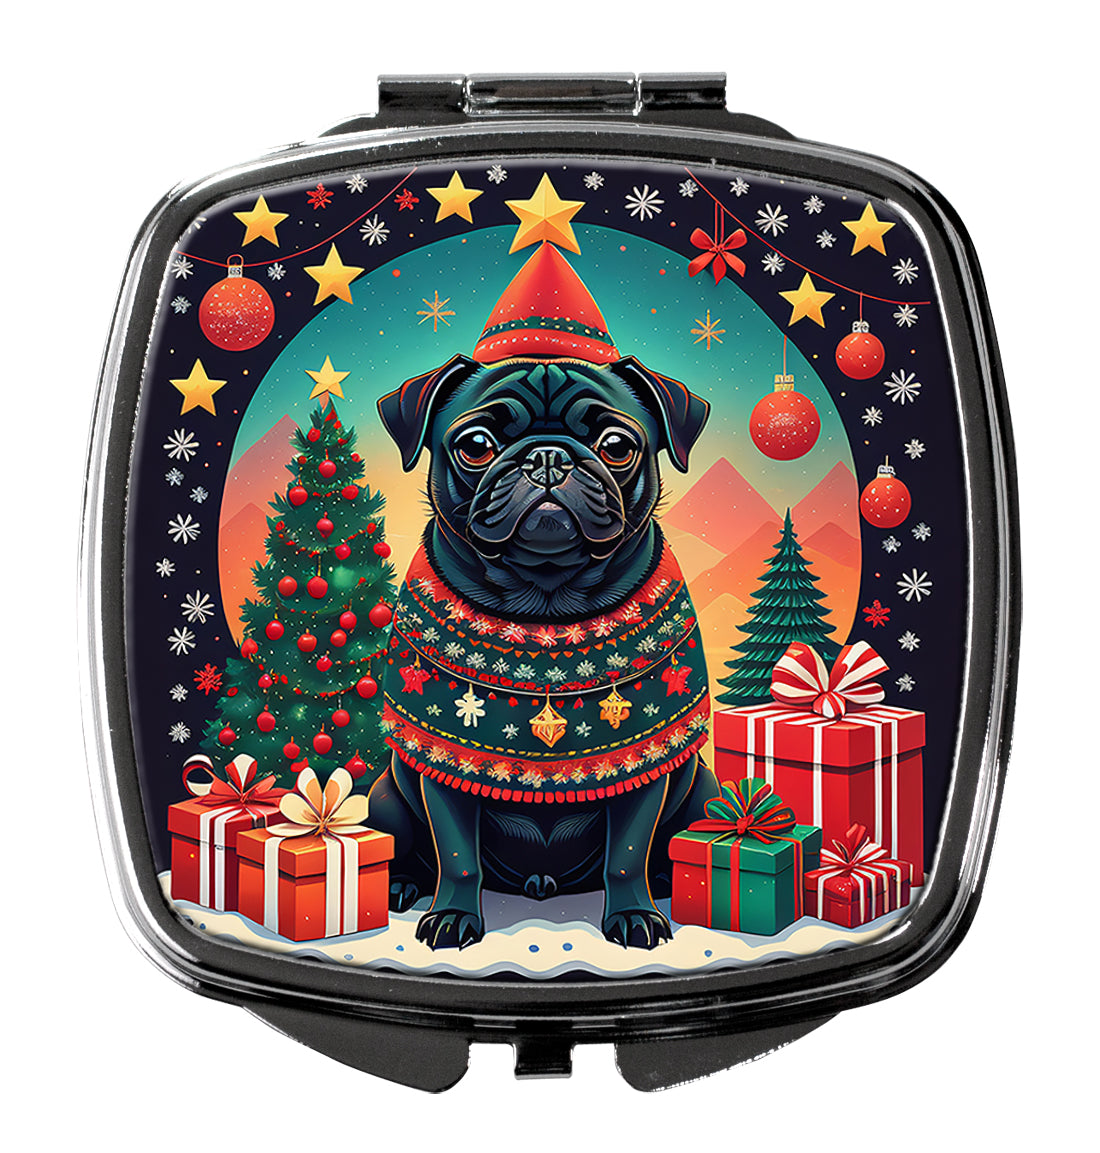 Buy this Black Pug Christmas Compact Mirror